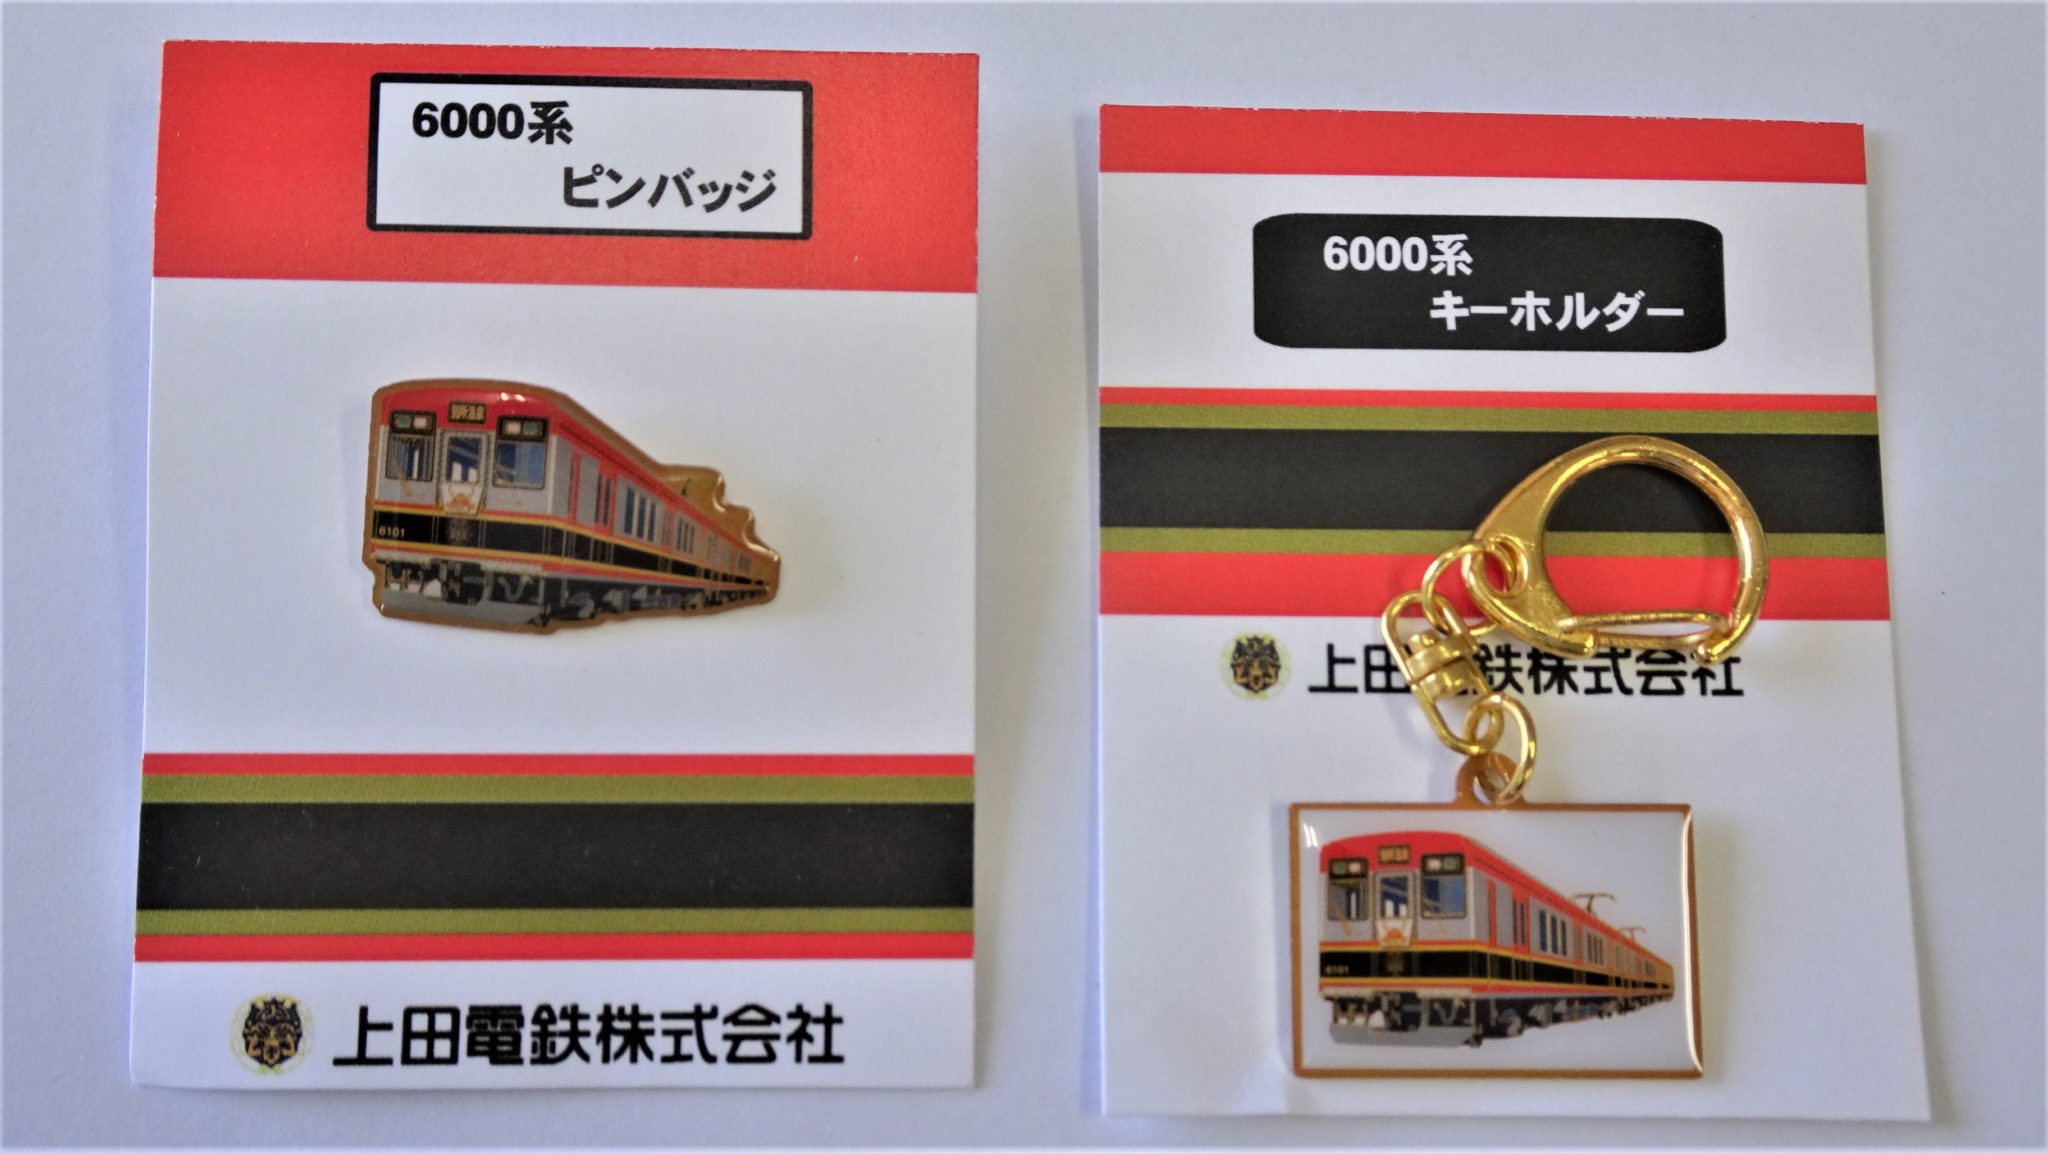 6000系ピンバッジとキーホルダー | 上田電鉄株式会社